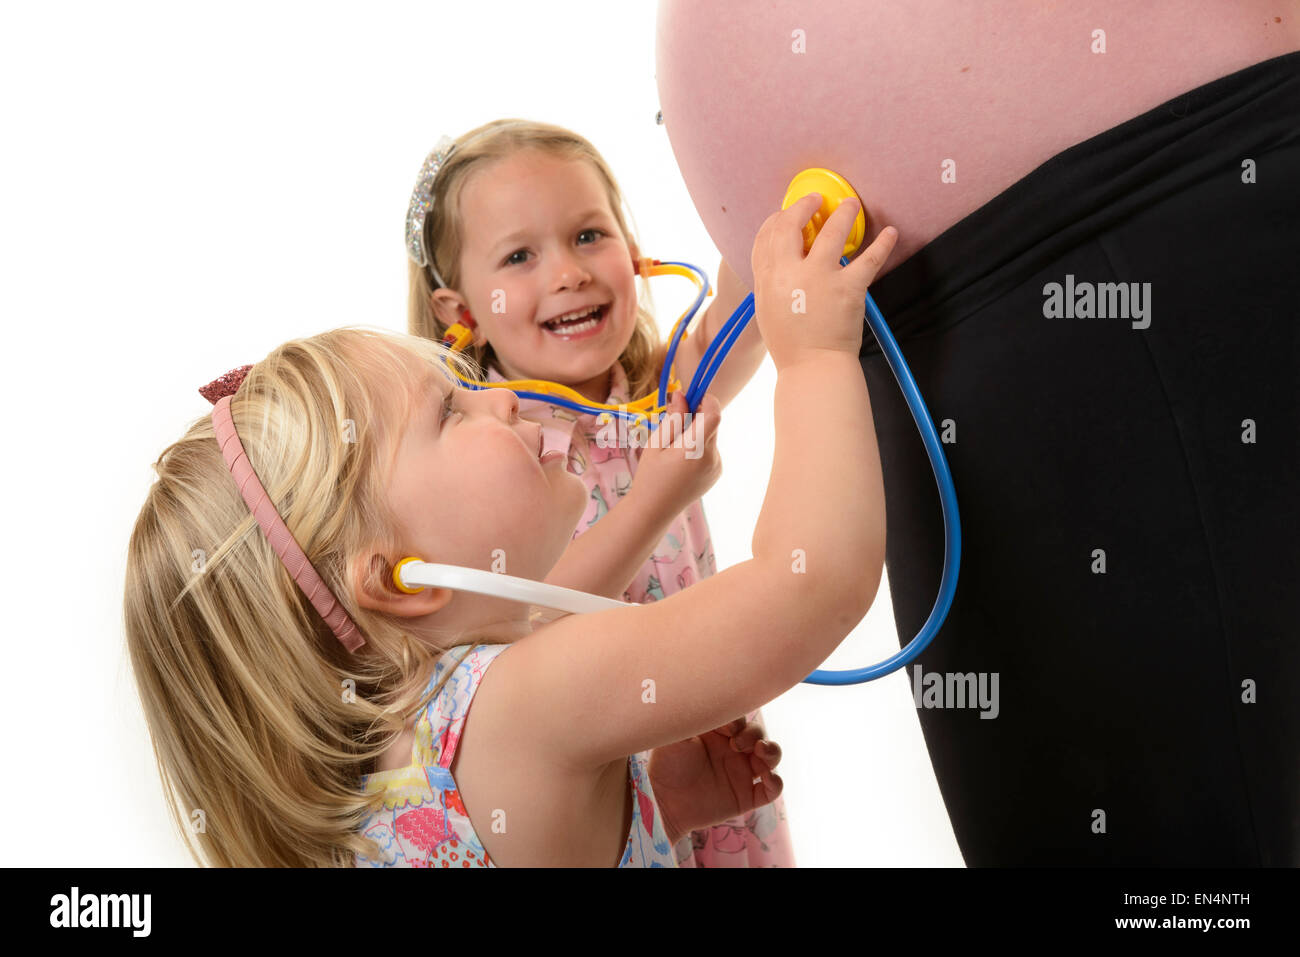 Eine Frau in einem späteren Stadium der Schwangerschaft mit zwei jungen Mädchen Stethoskope an ihrem Baby-Bauch halten. Stockfoto